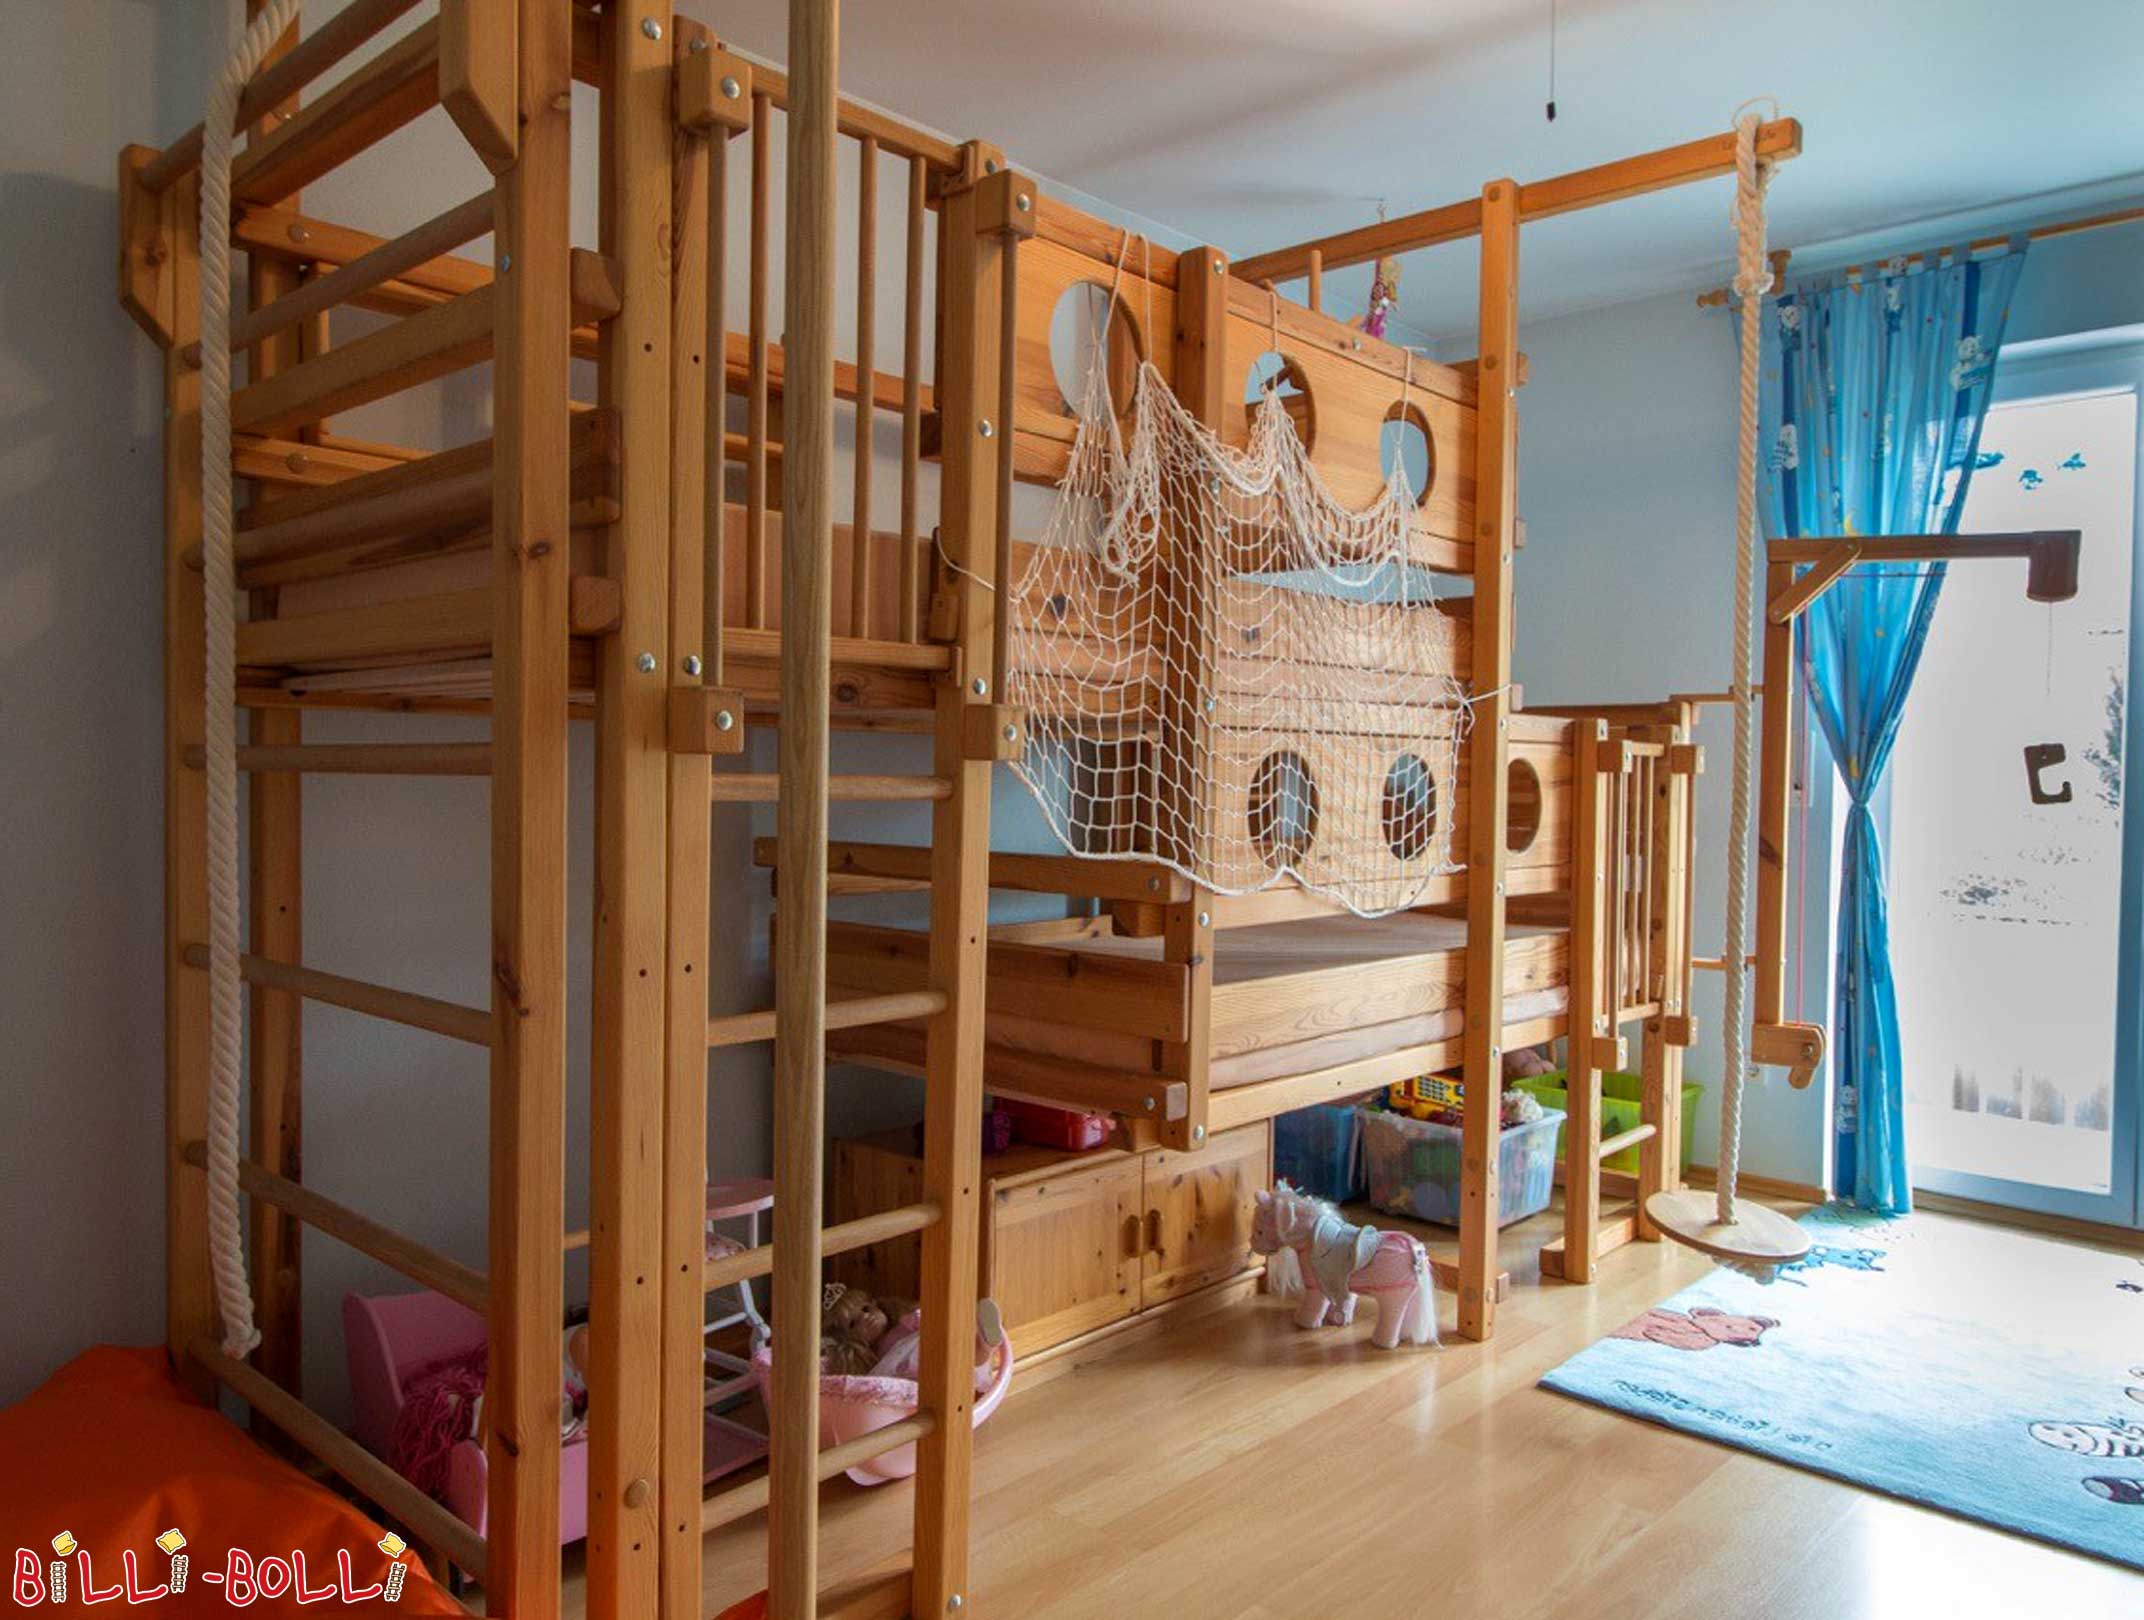 Camas de casal feitas de madeira: O beliche de casal é um beliche de casal para 2 crianças (Beliches com ambos os tops)